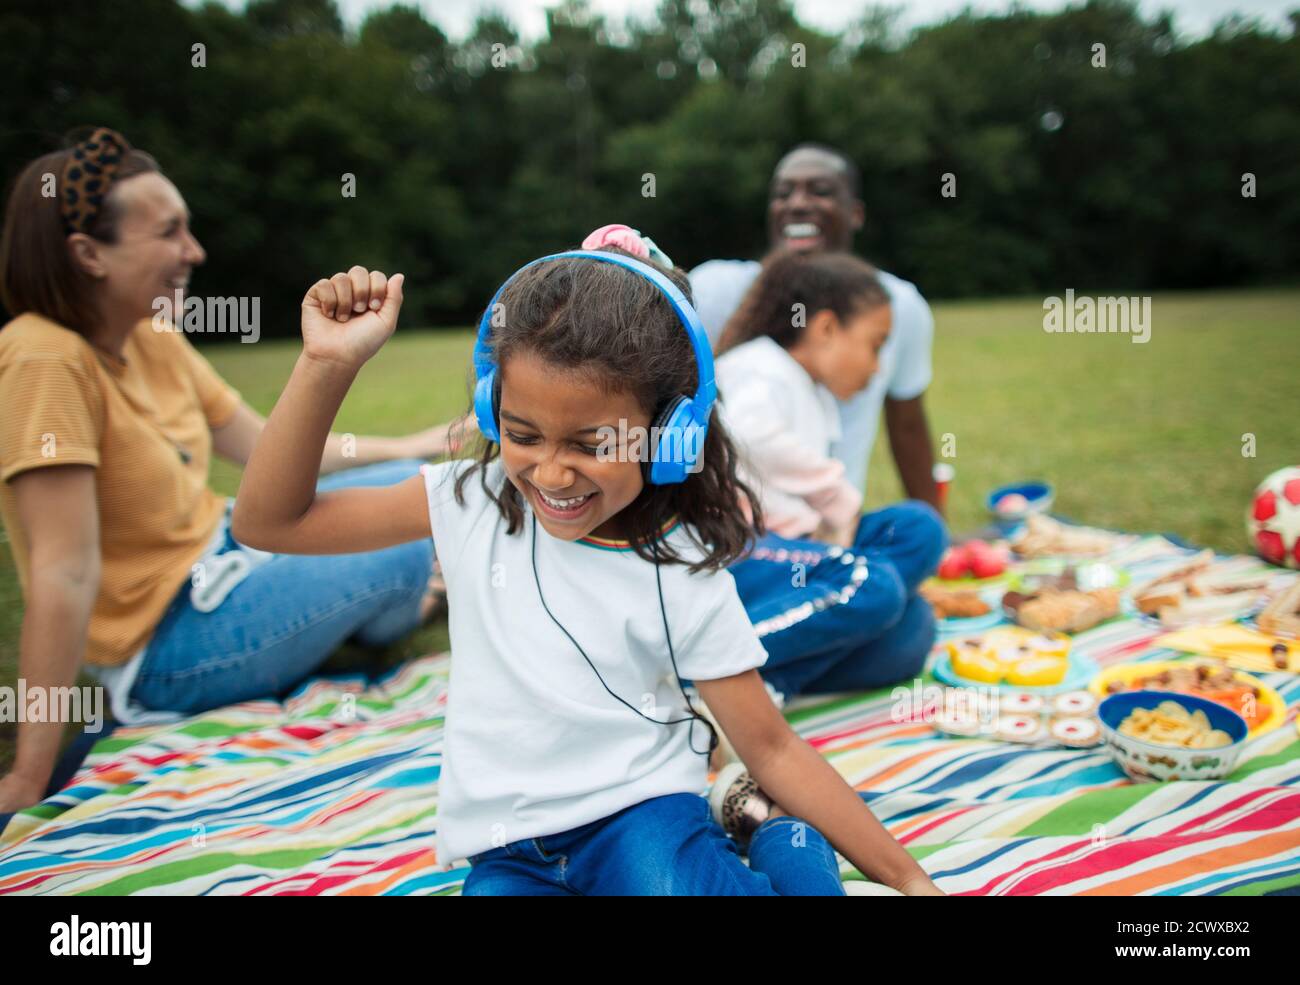 Sorgloses Mädchen, das Musik mit Kopfhörern auf der Picknickdecke hört Stockfoto